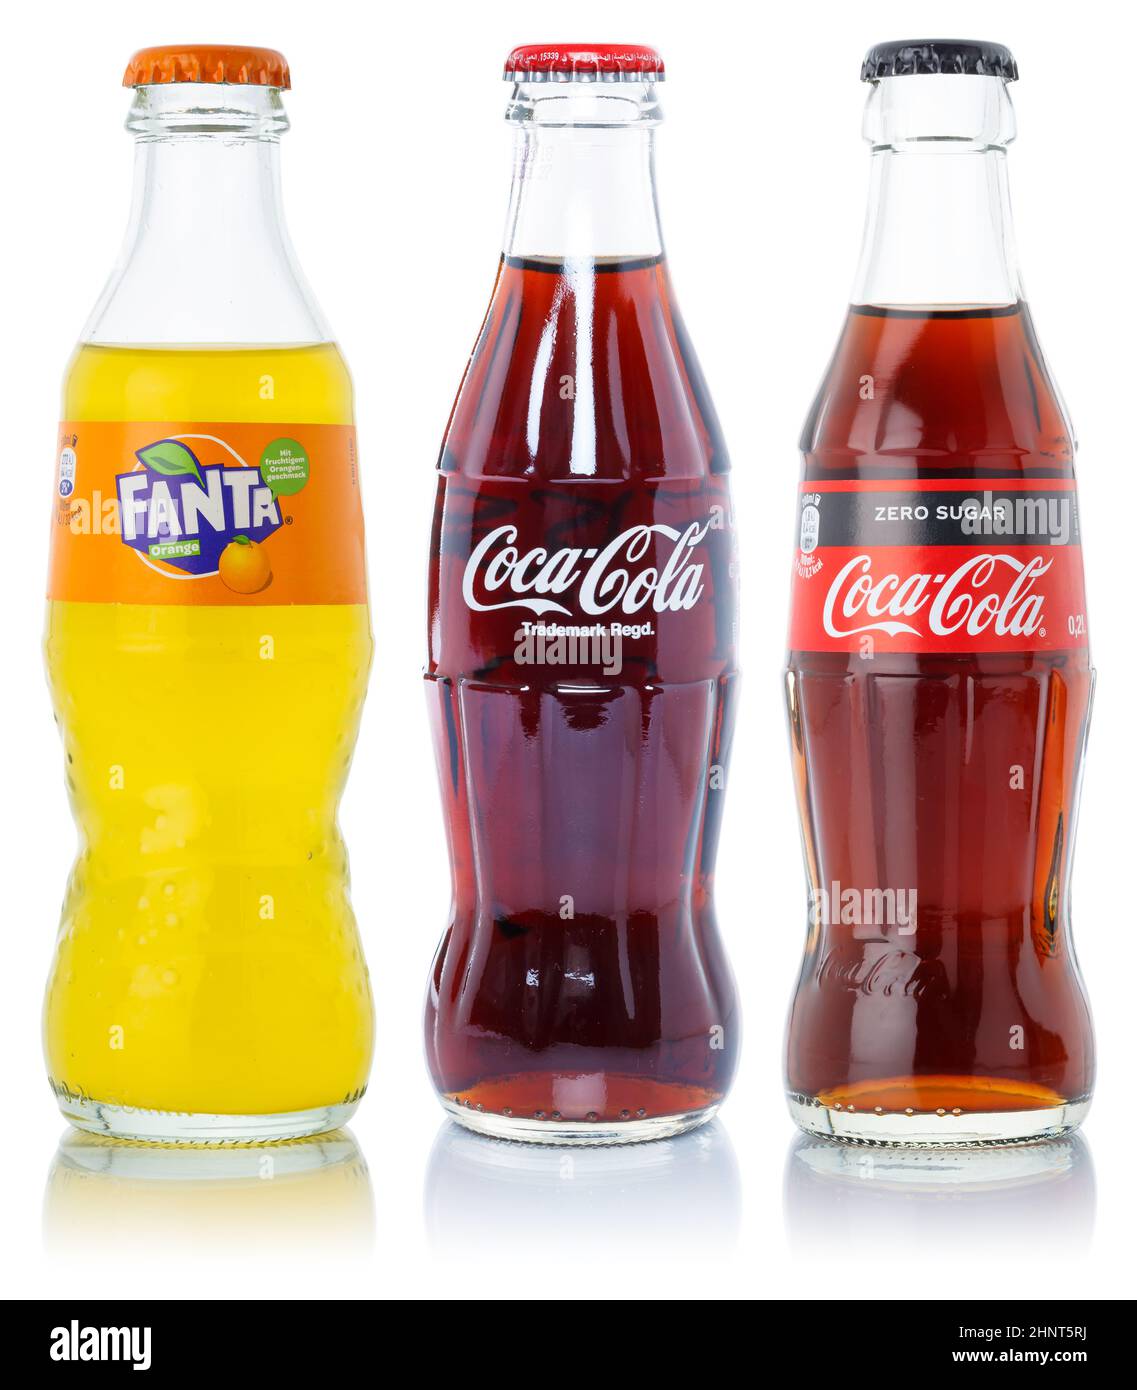 La Coca Cola Coca-Cola Fanta offre bevande alla limonata in bottiglie isolate su sfondo bianco Foto Stock